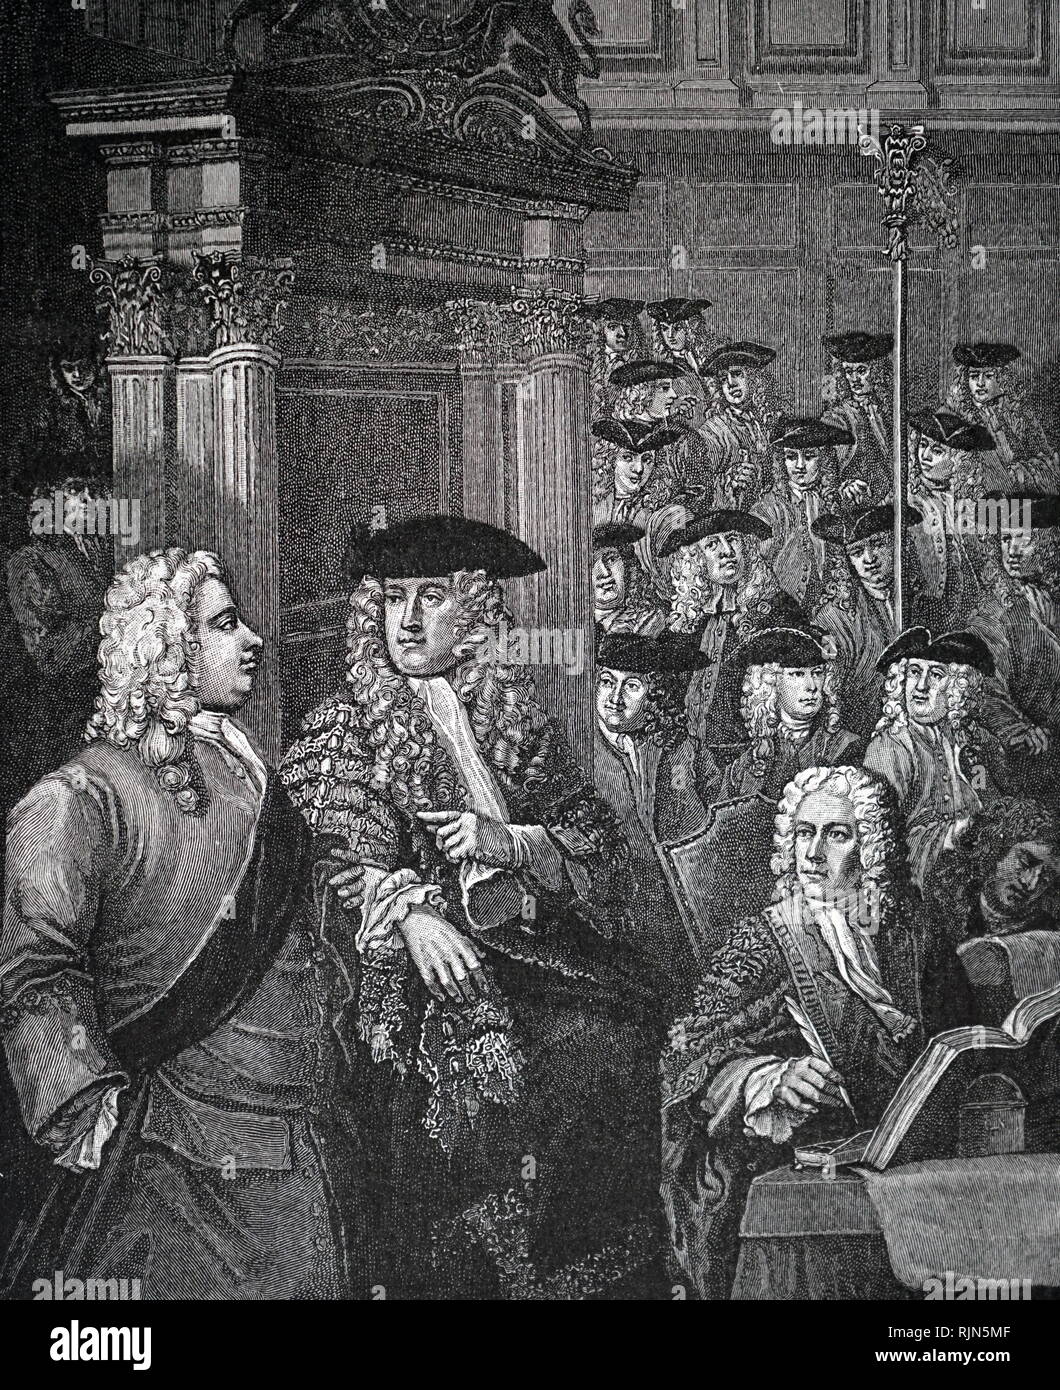 Illustration de la Chambre des communes, le Parlement, au cours du temps d'Horace Walpole. Londres 1795 Banque D'Images